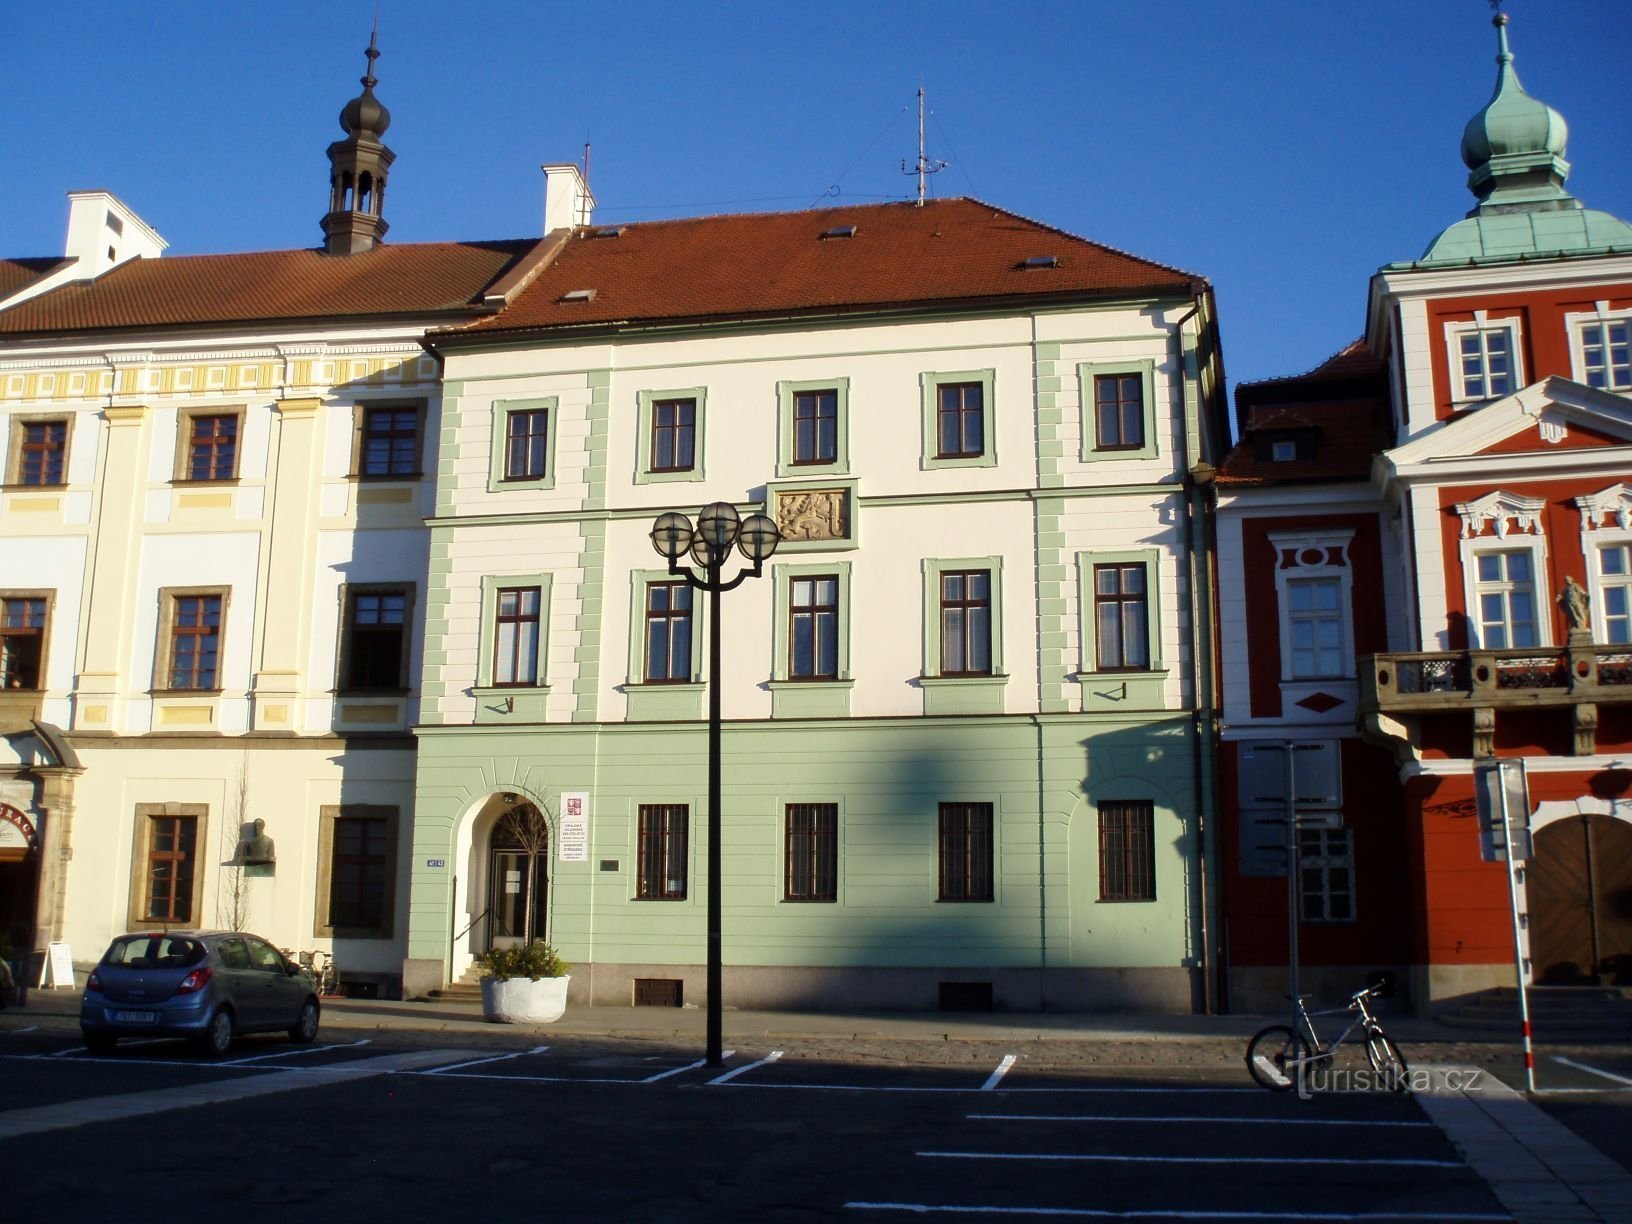 Velké náměstí n. 33 (Hradec Králové, 25.4.2012 ottobre XNUMX)